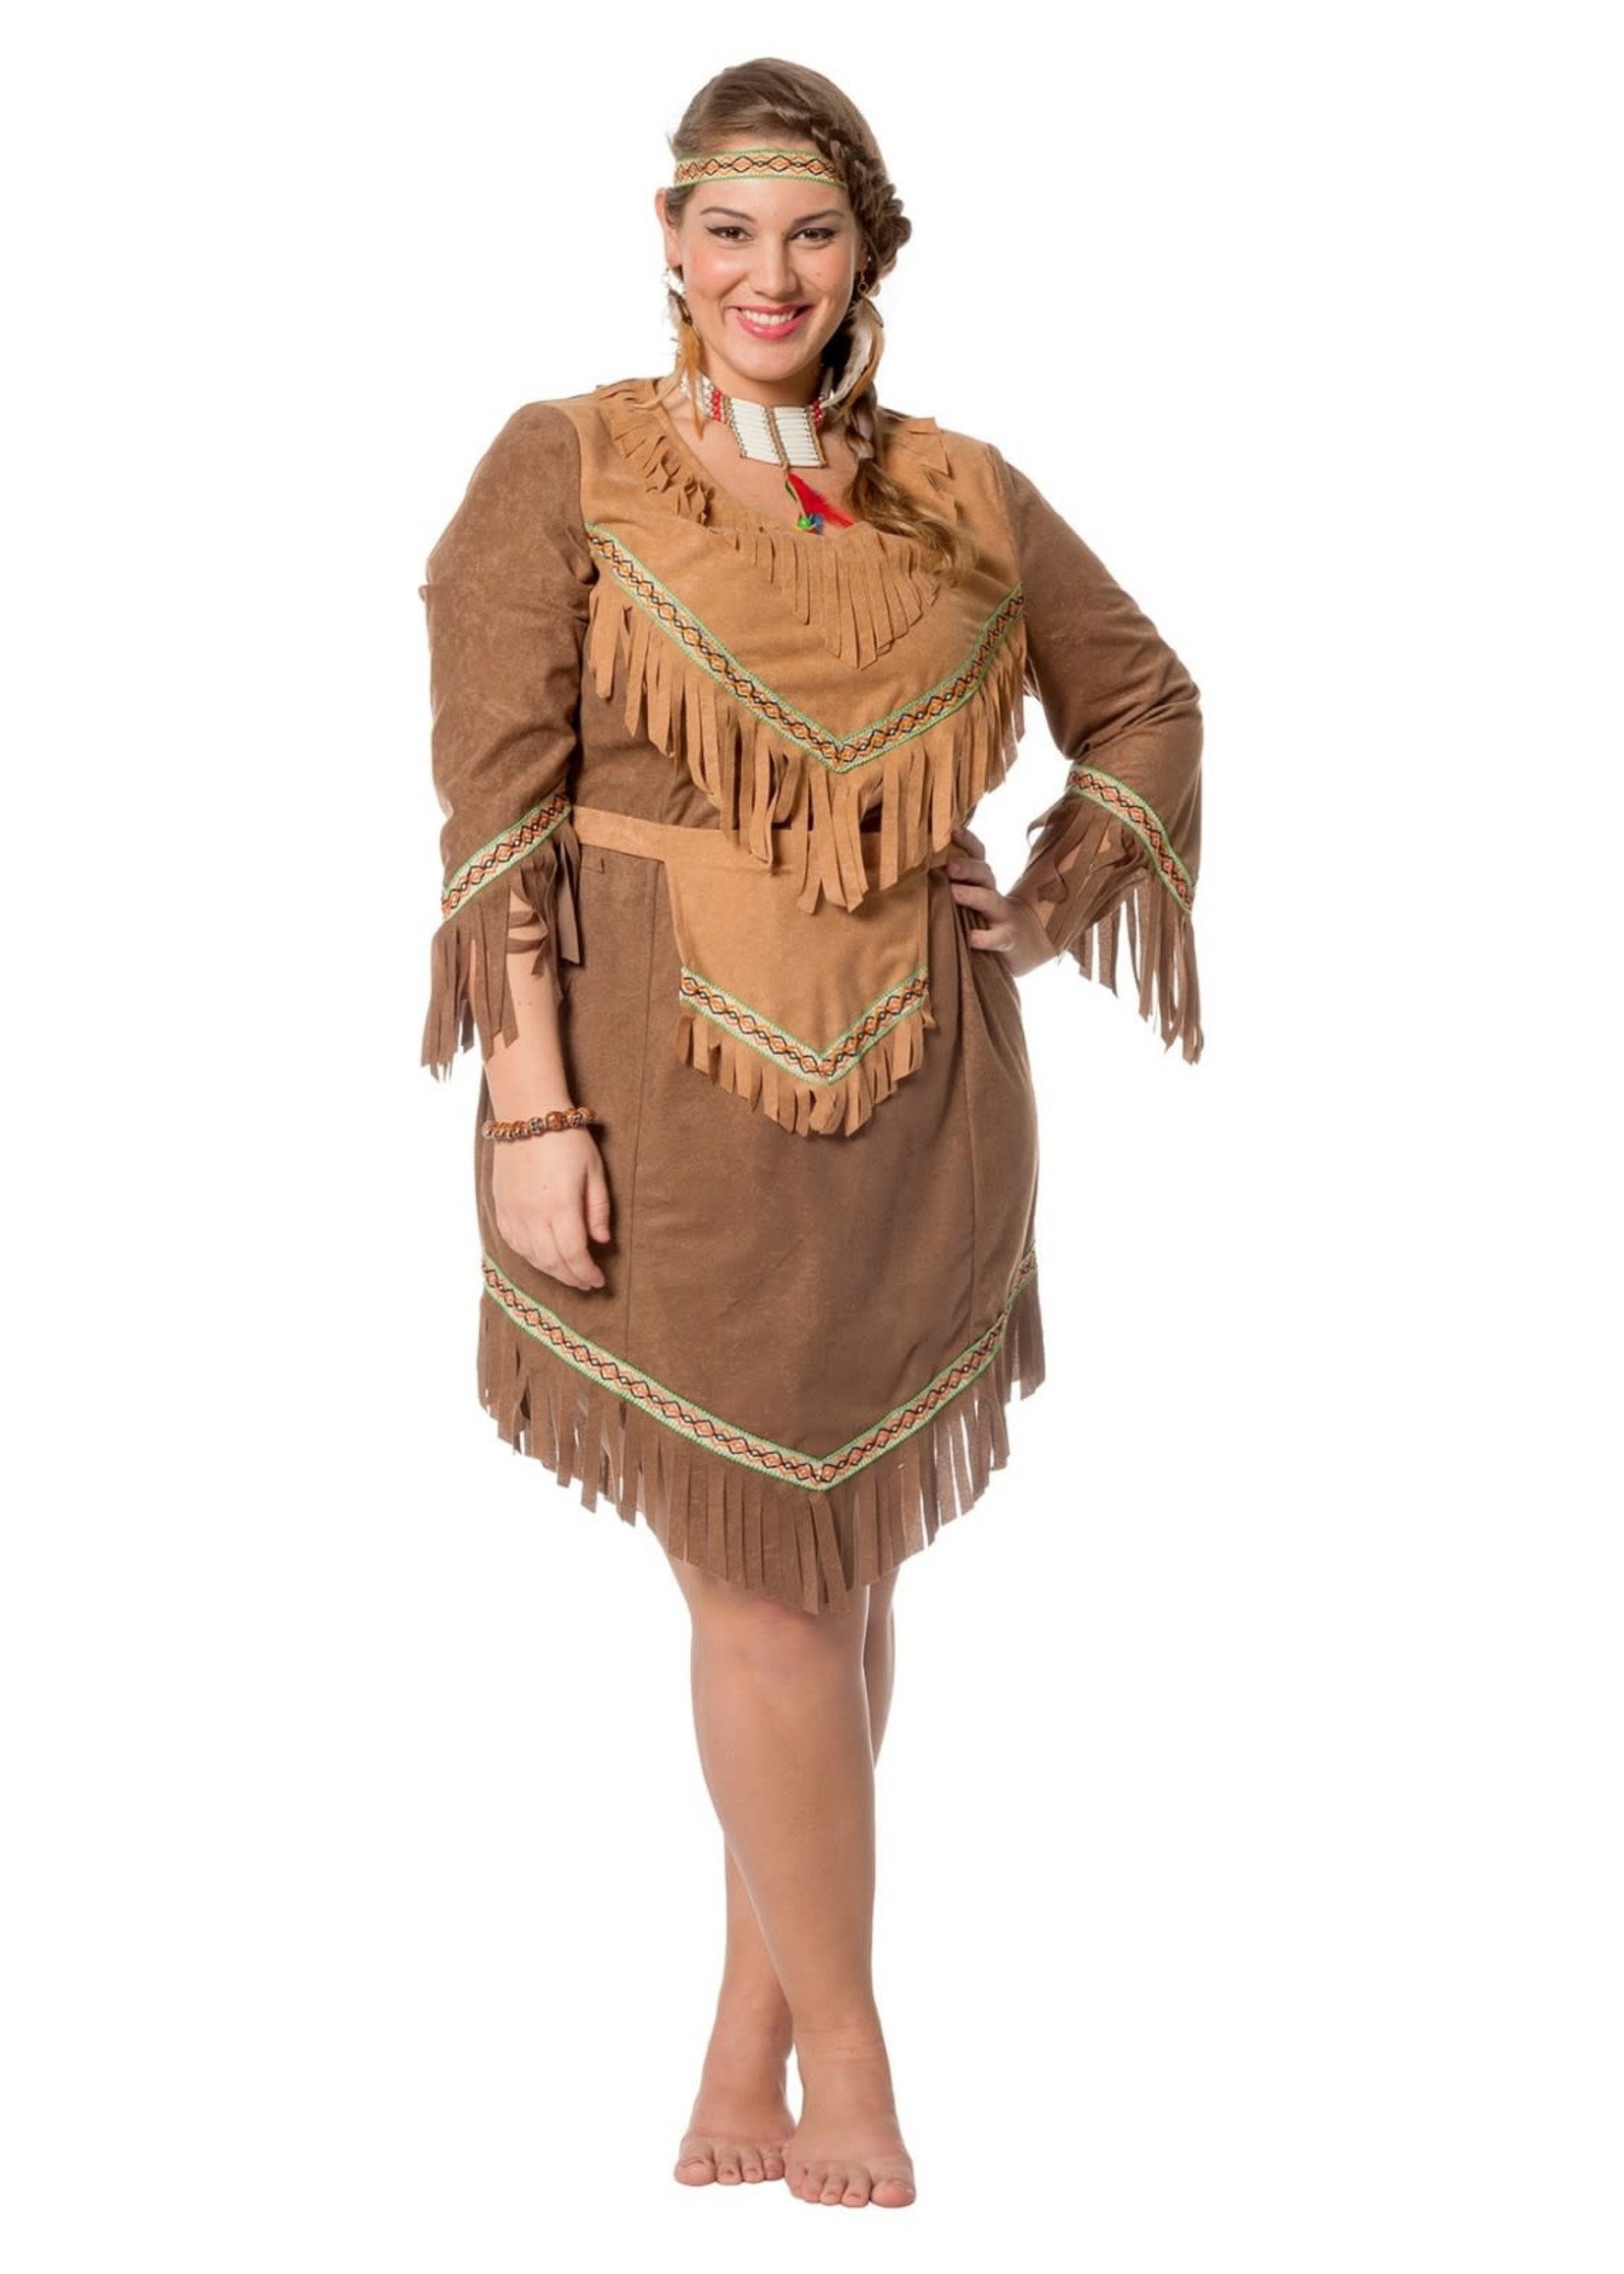 Feestkleding Breda Indianen jurk bruin